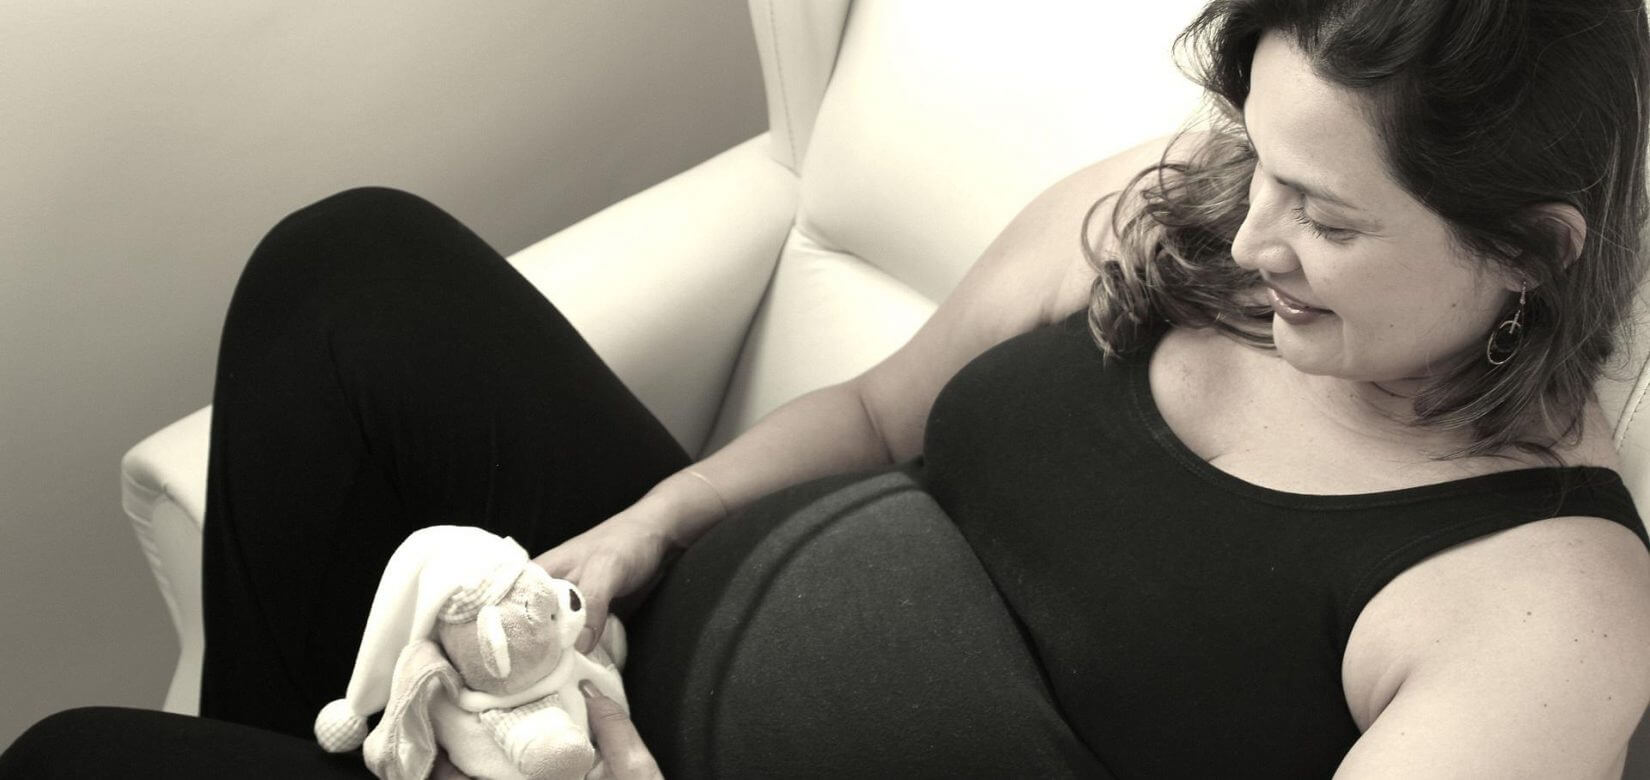 Εγκυμοσύνη και κορονοϊός: Ποιες είναι οι σοβαρές επιπλοκές από τις οποίες κινδυνεύουν οι έγκυες